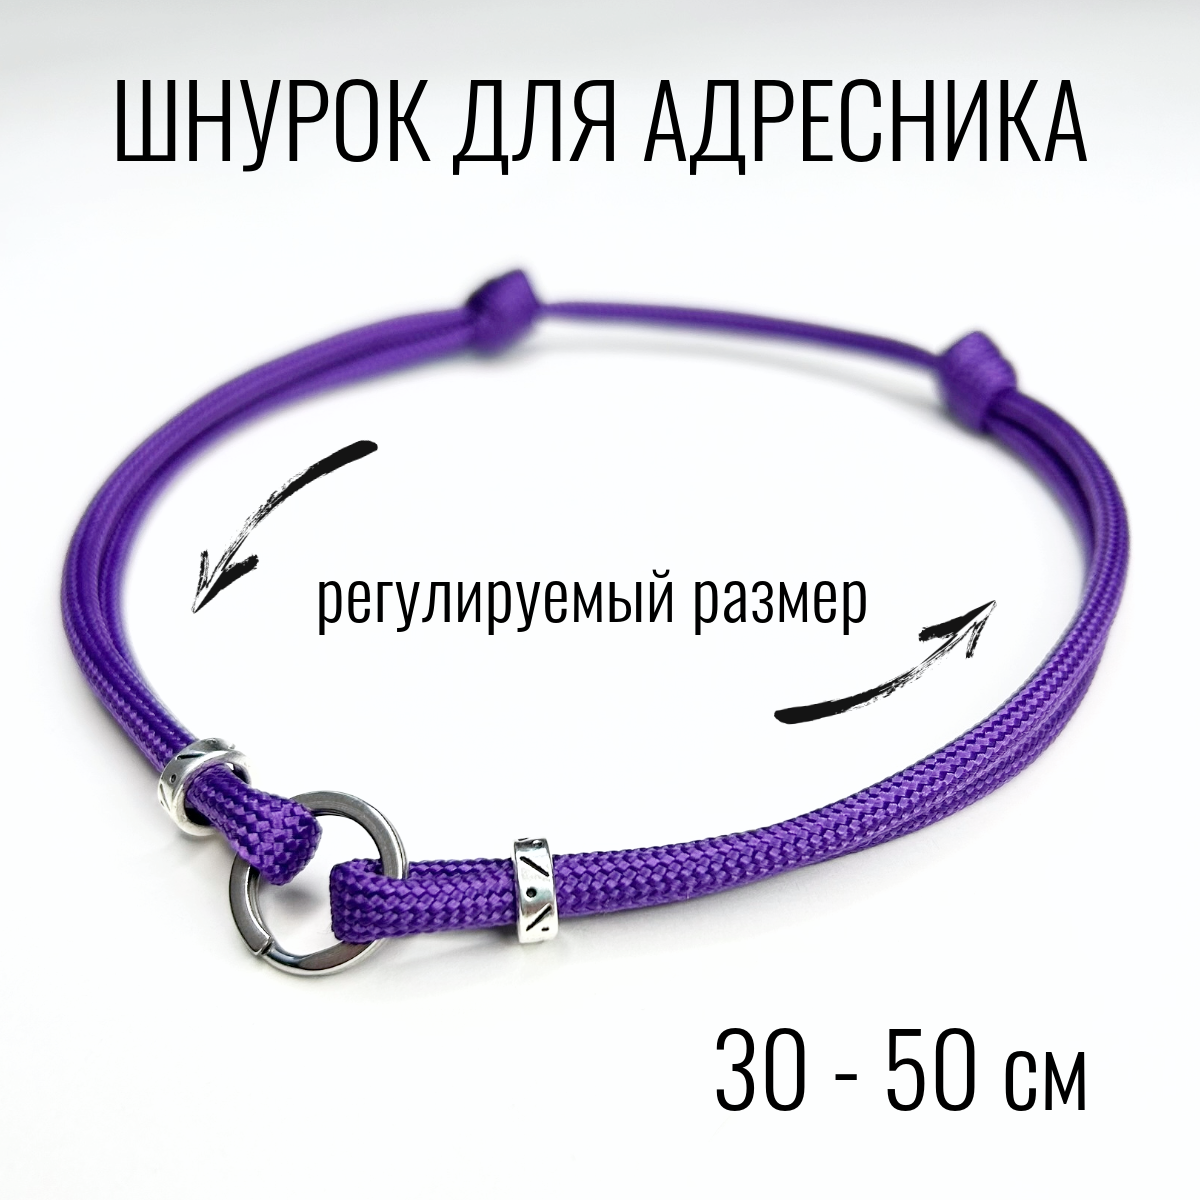 Шнурок для адресника Shani Workshop для собак, с кольцом и бусинами, фиолетовый, 30-50 см